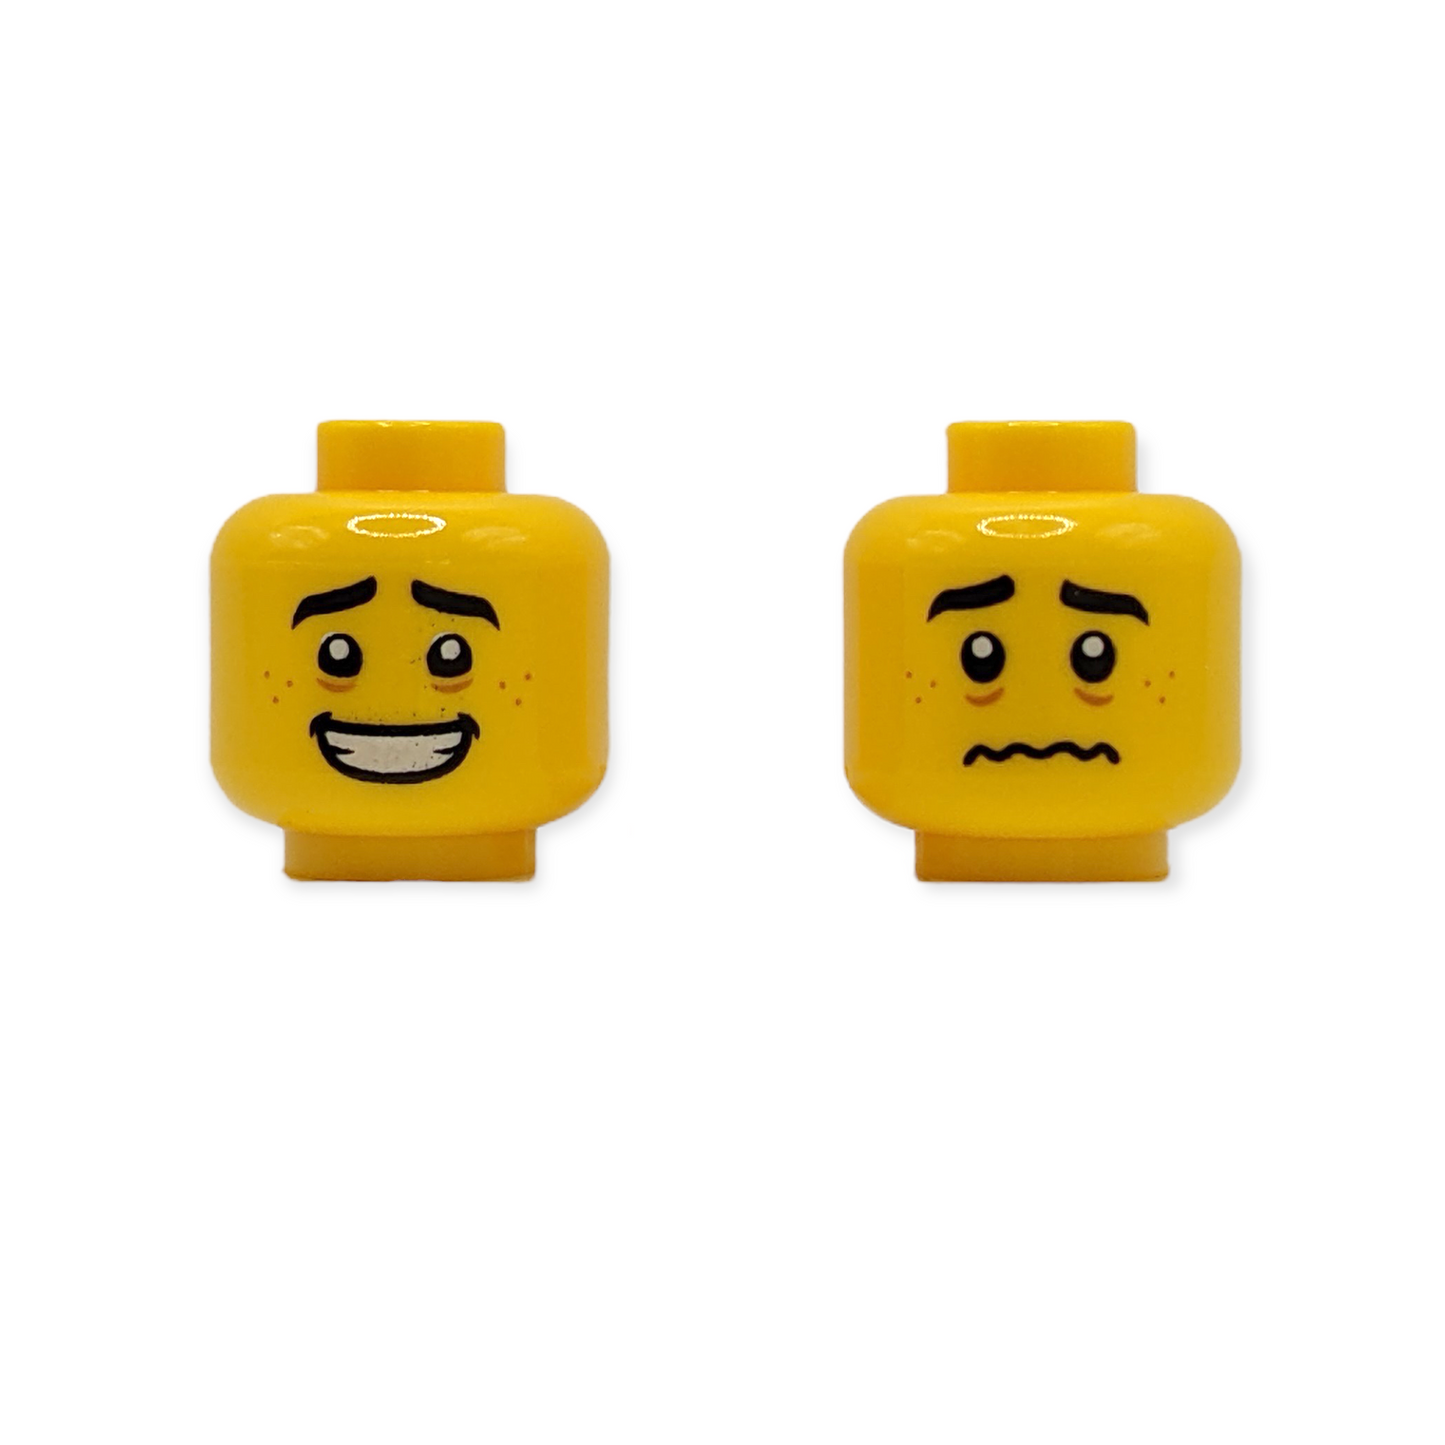 LEGO Head - 3375 Dual Sided Black Eyebrows